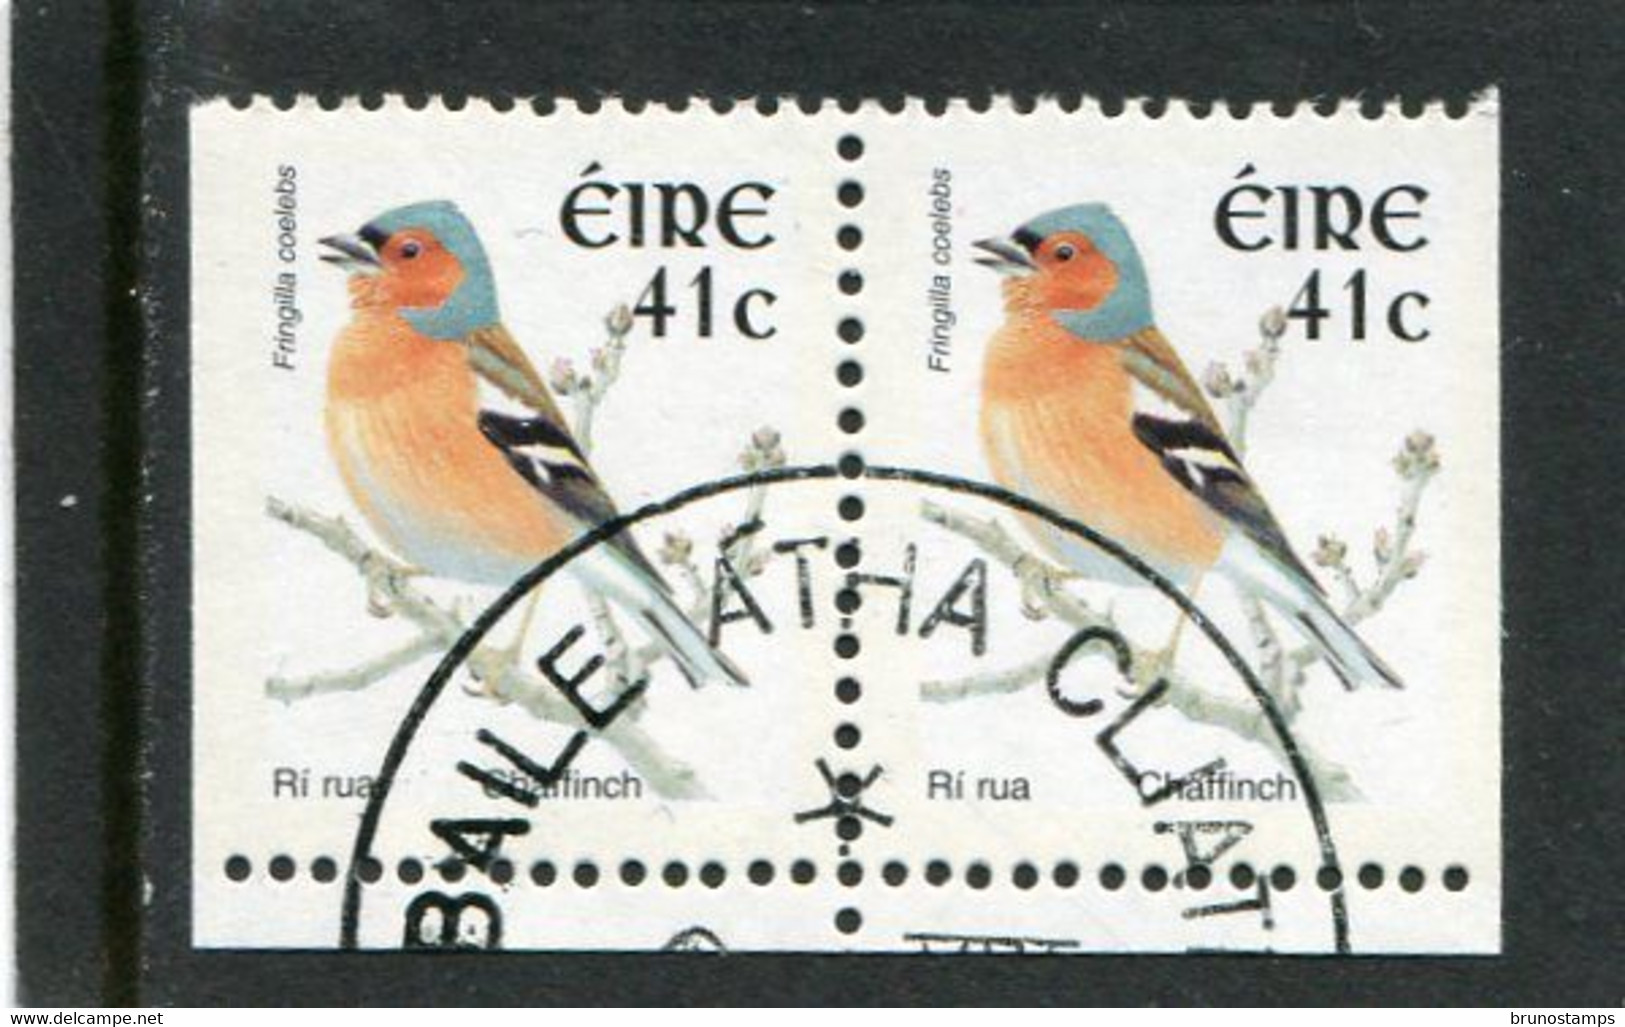 IRELAND/EIRE - 2002  41c  BIRDS  SMALLER SIZE  PAIR  EX BOOKLET  FINE USED - Gebruikt